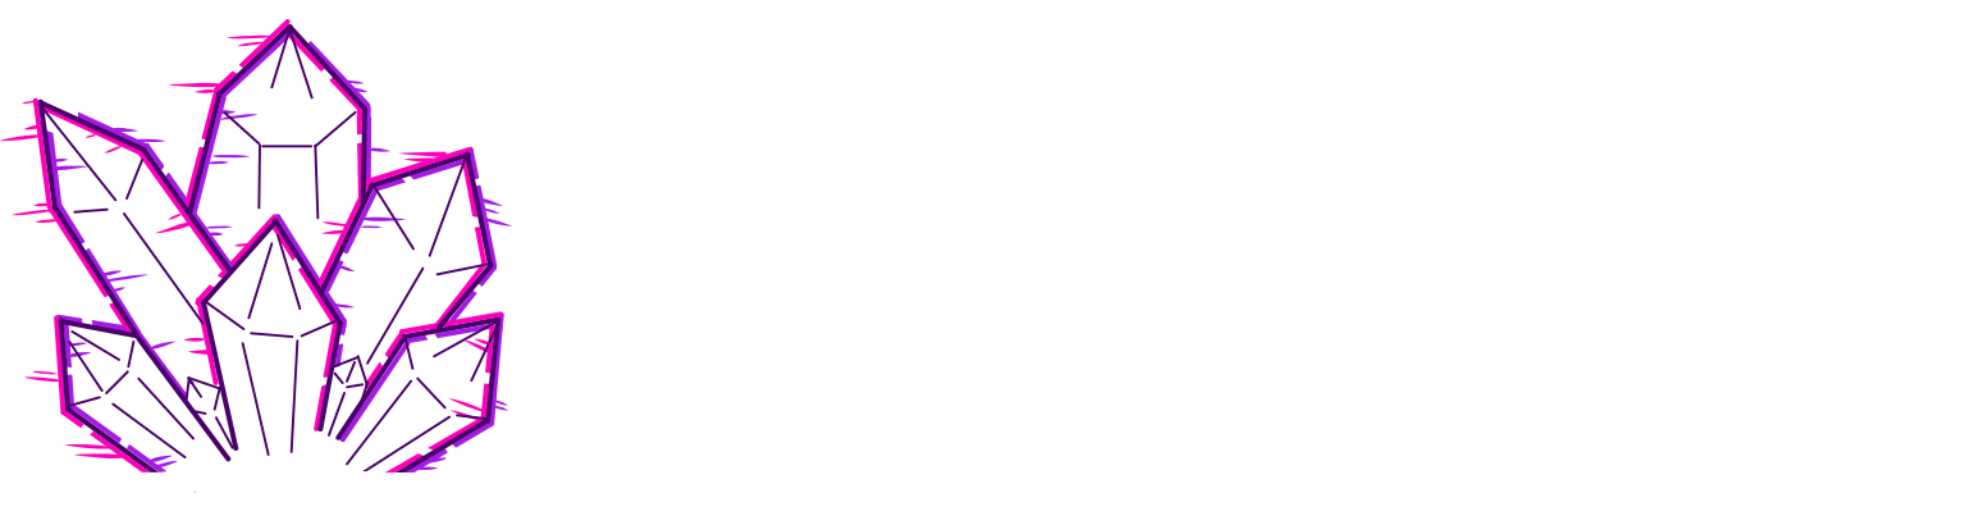 Amethyst Hosting